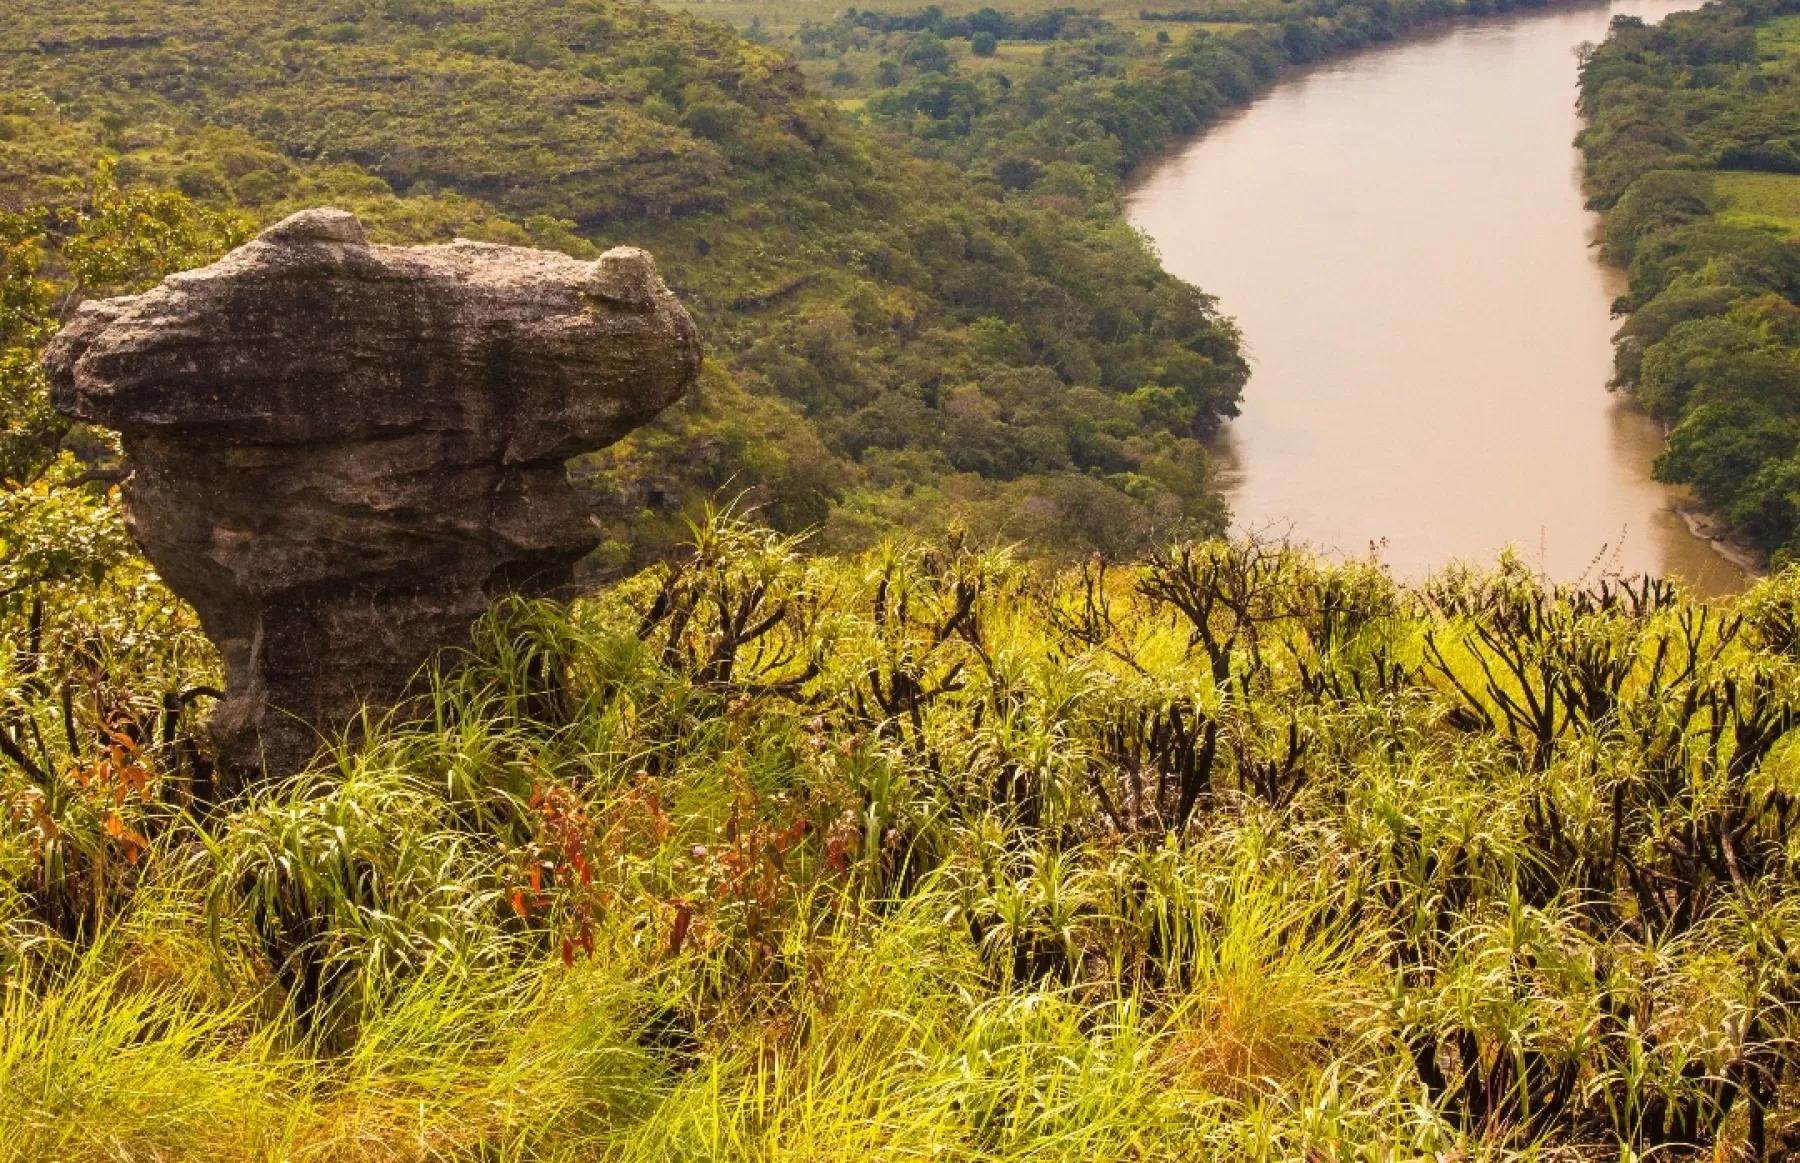 Actividades como fotografía, contemplación de naturaleza, navegación por el río Guayabero, observación de pinturas rupestres y petroglifos, así como observación de flora y fauna silvestre se pueden realizar en la zona.